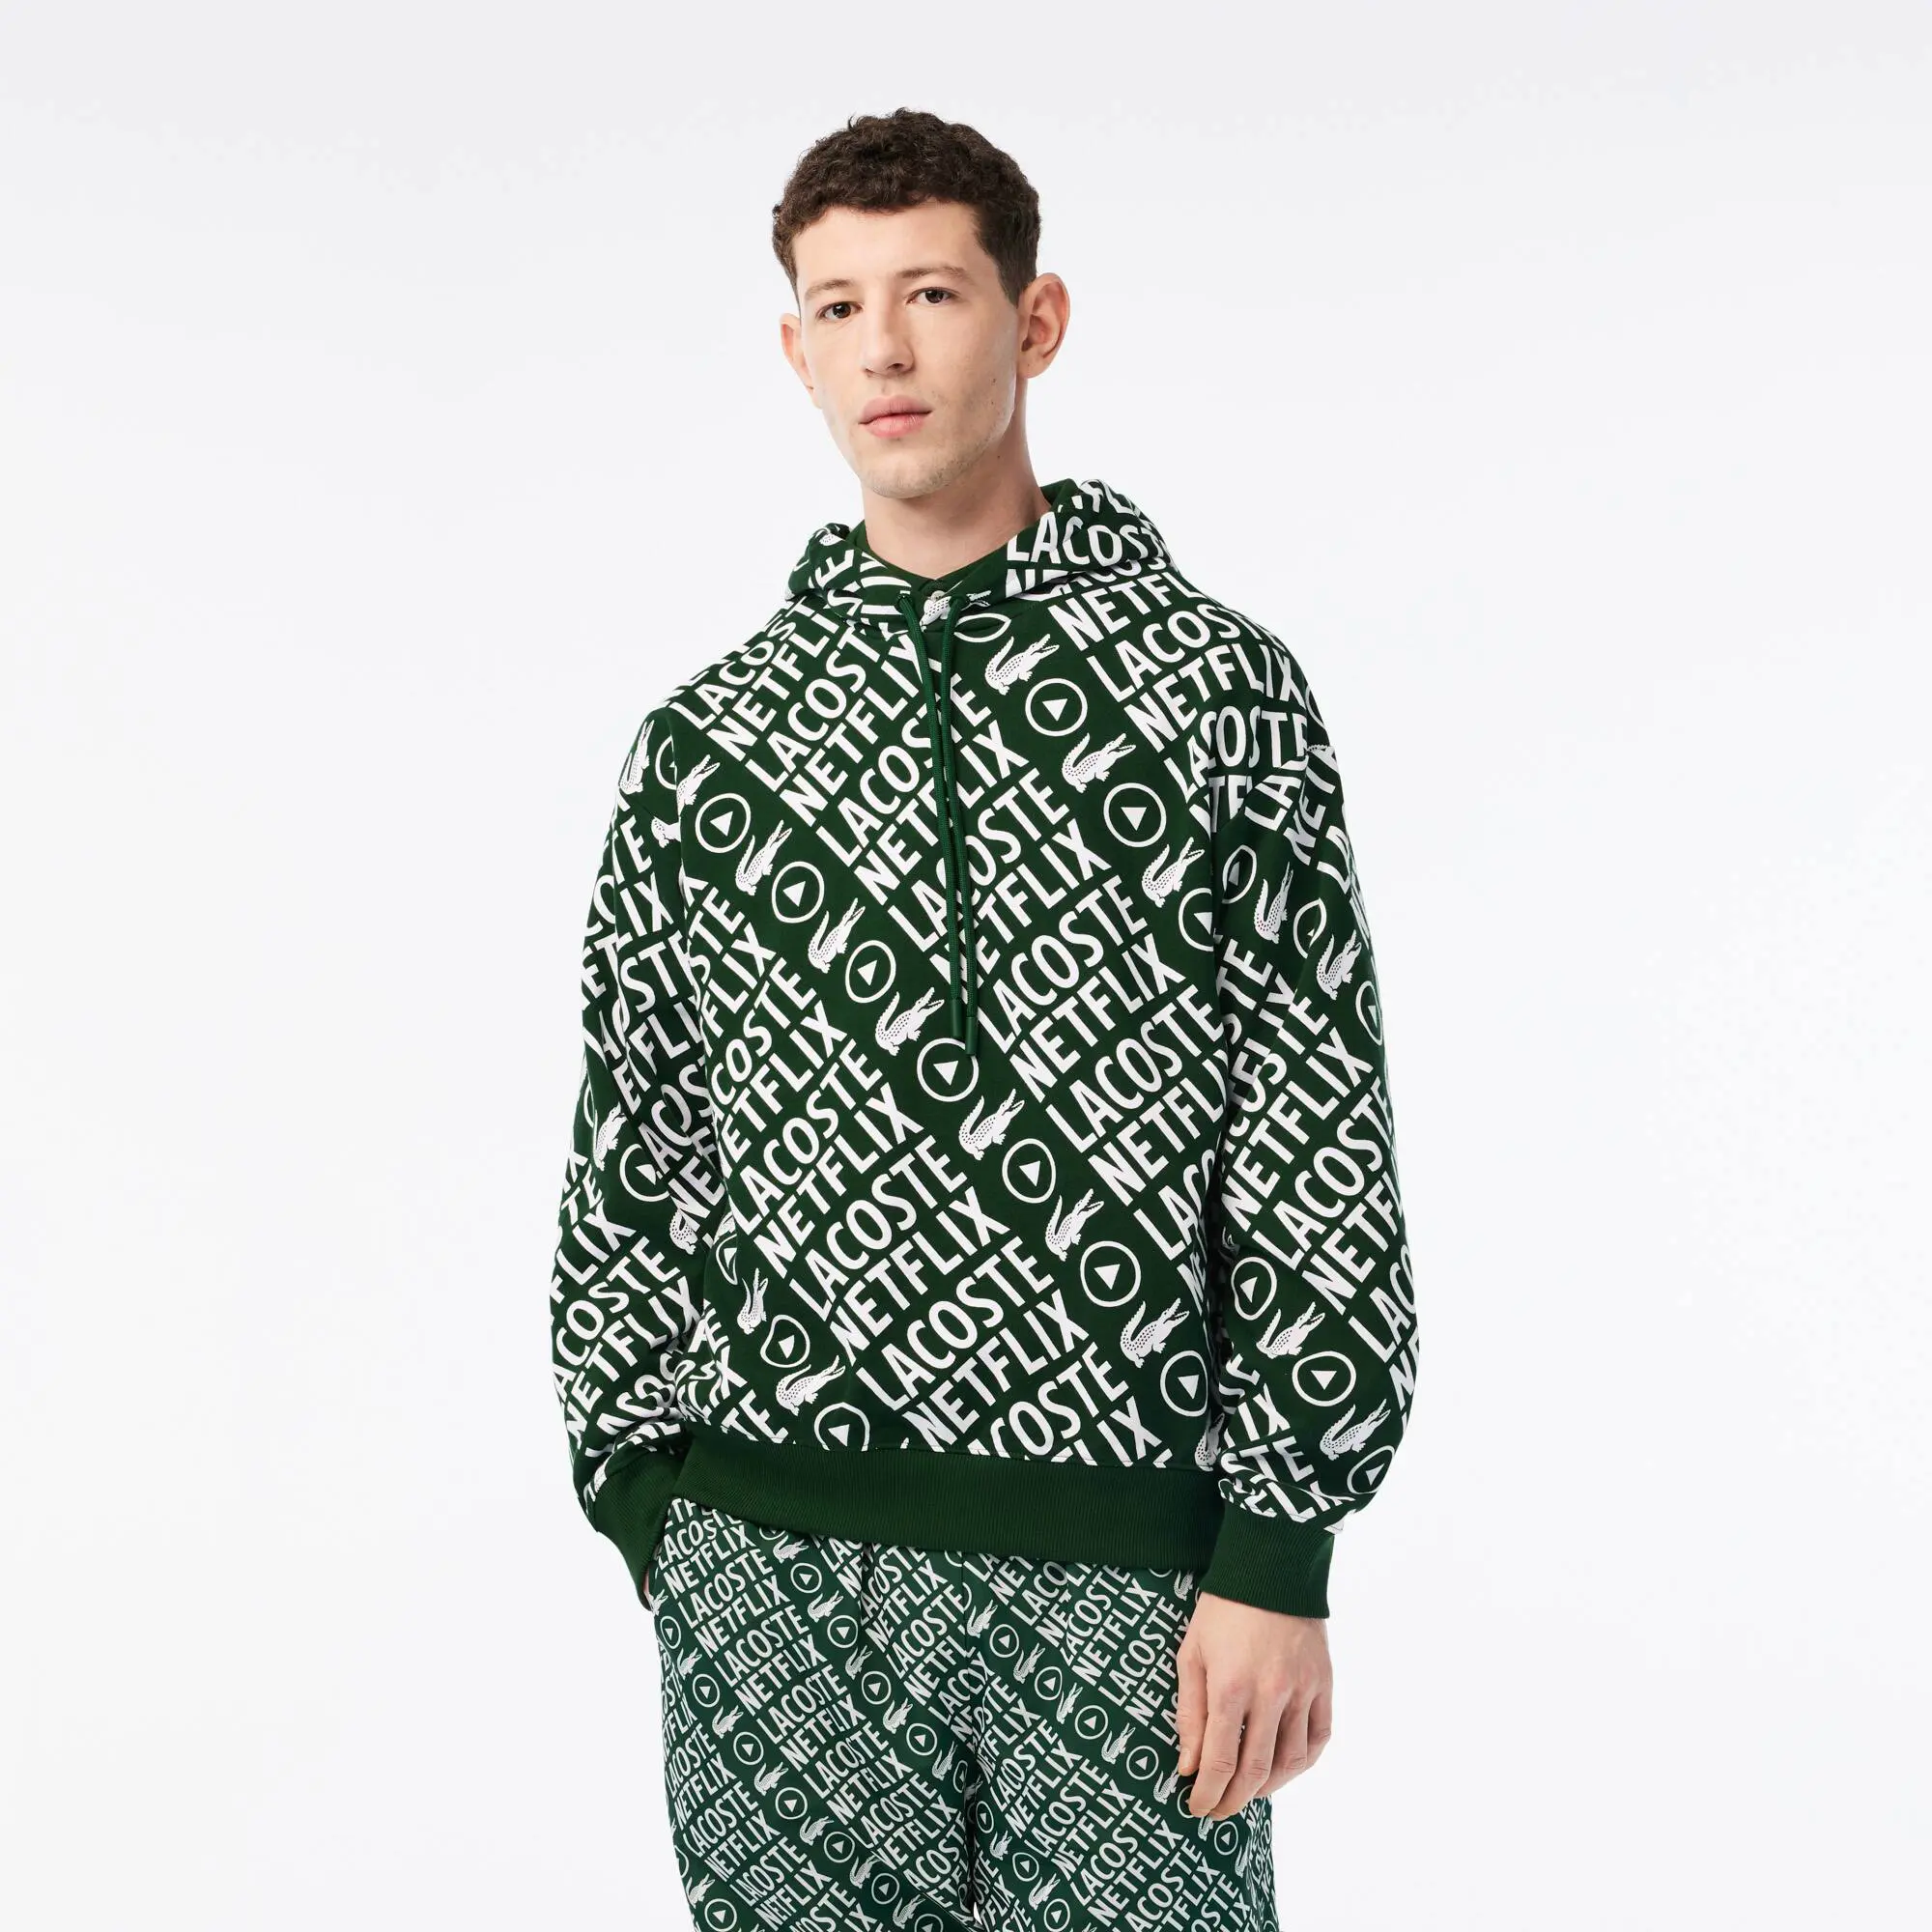 Lacoste Men’s Lacoste x Netflix Loose Fit Organic Cotton Sweatshirt. 1